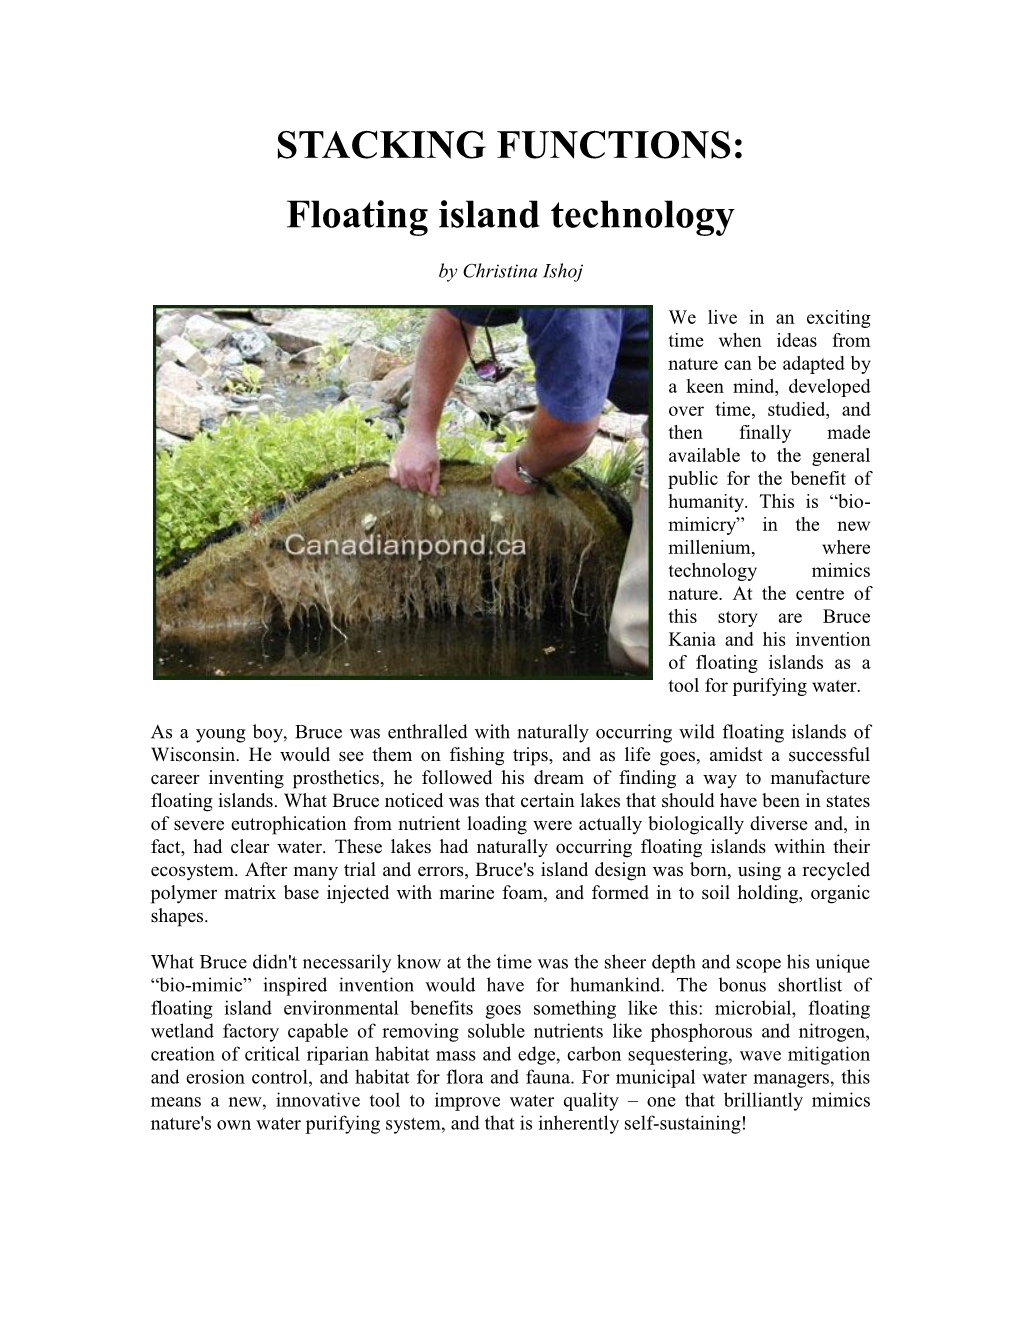 Floating Island Technology